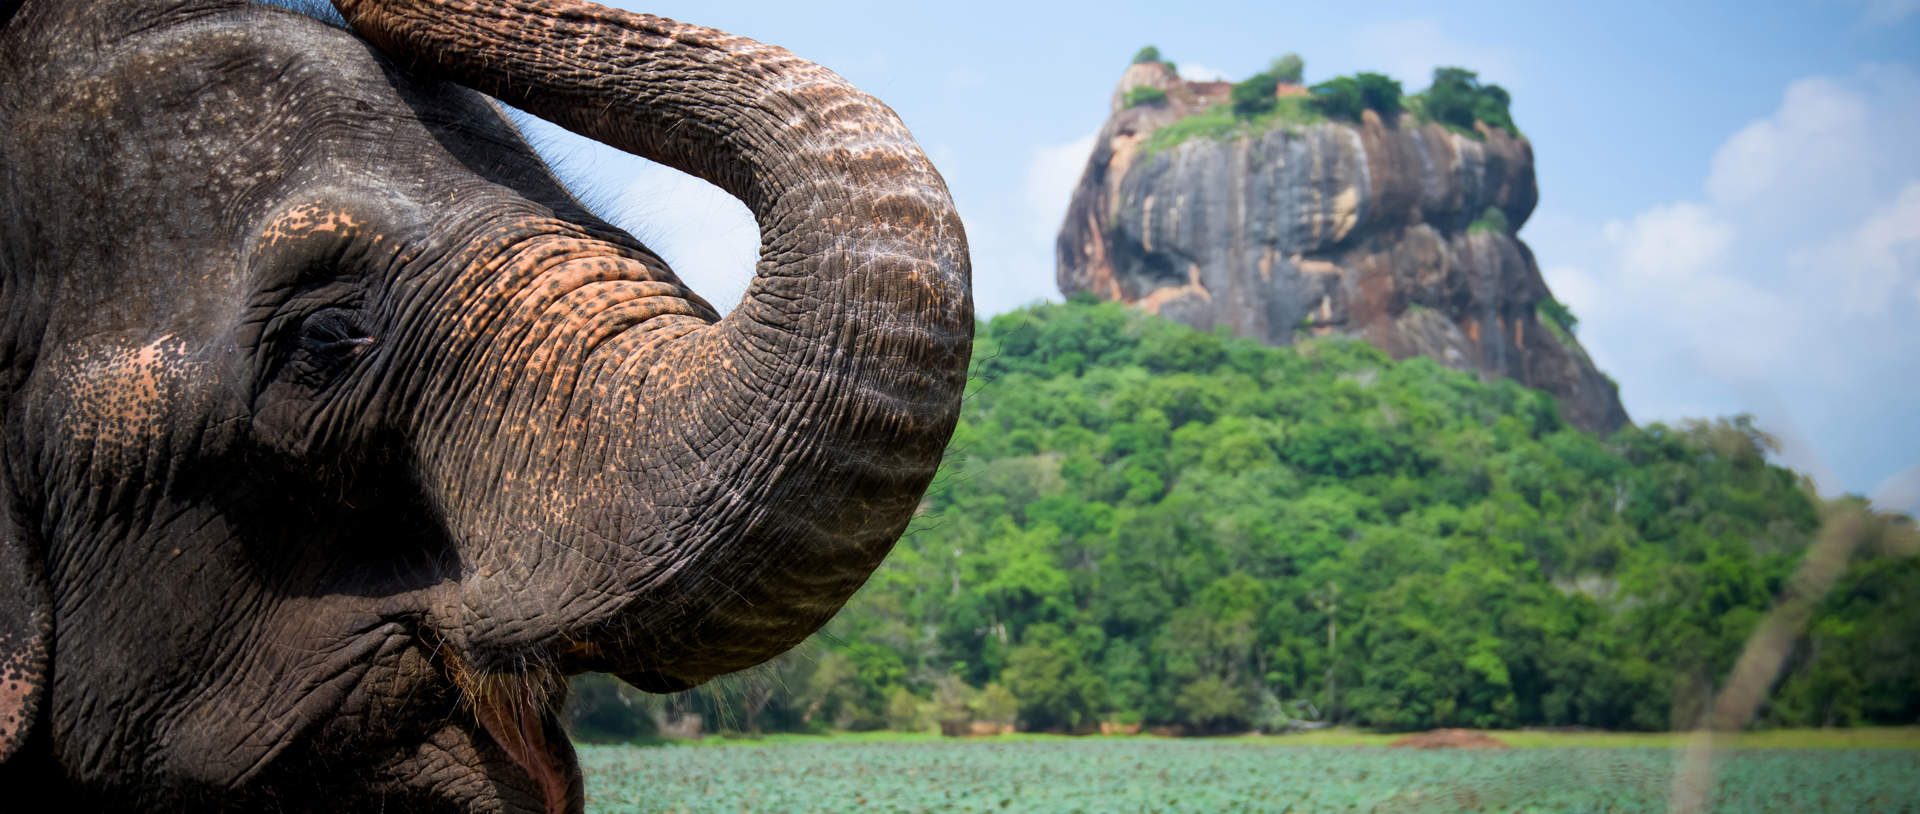 Sri Lanka Lion Rock And Elephant (1)